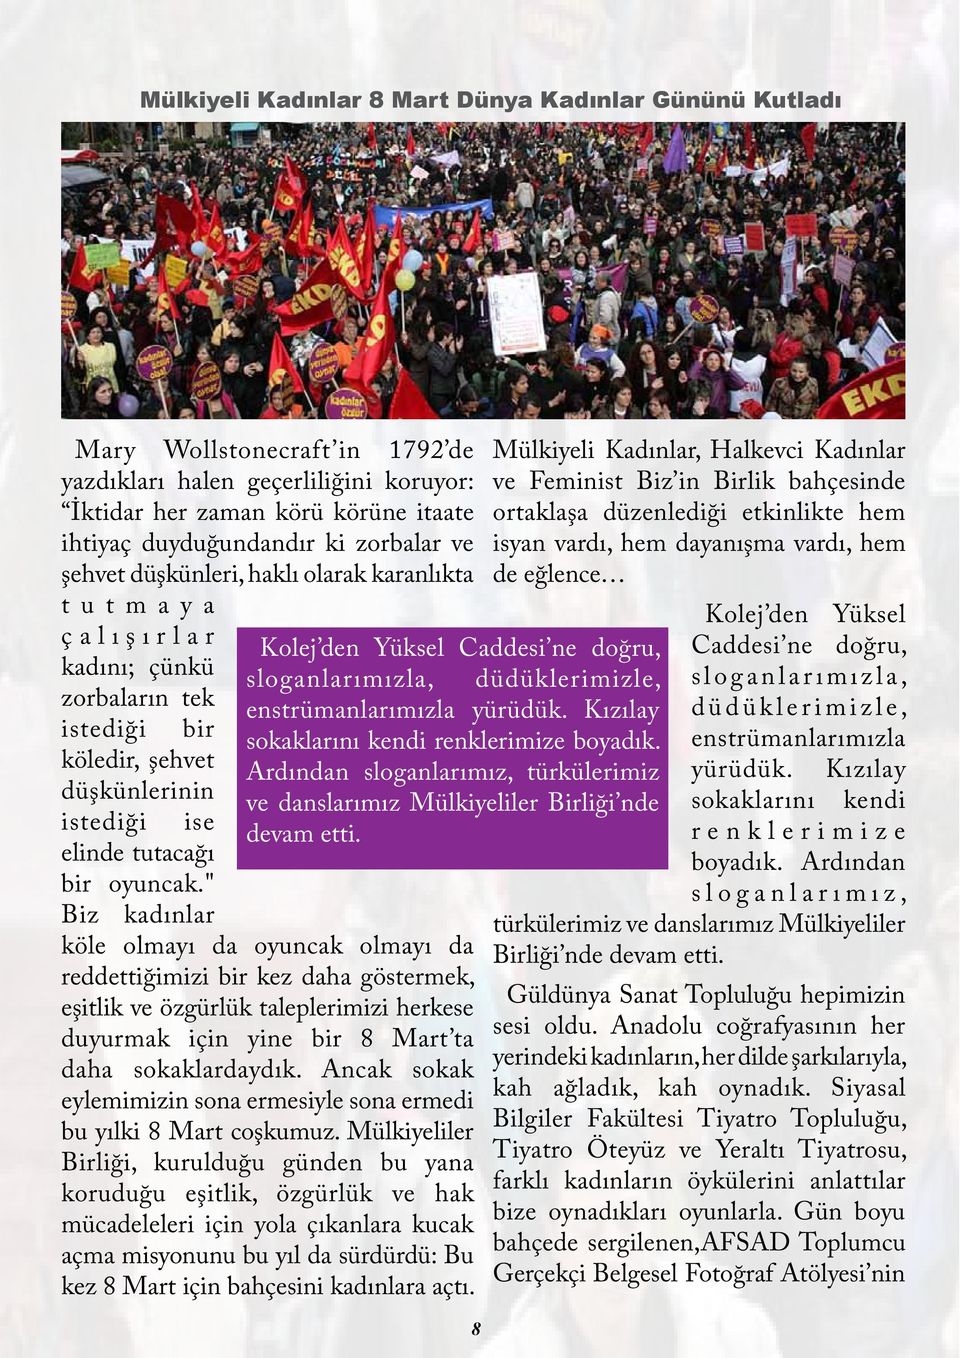 Kızılay sokaklarını kendi renklerimize boyadık. Ardından sloganlarımız, türkülerimiz ve danslarımız Mülkiyeliler Birliği nde devam etti.